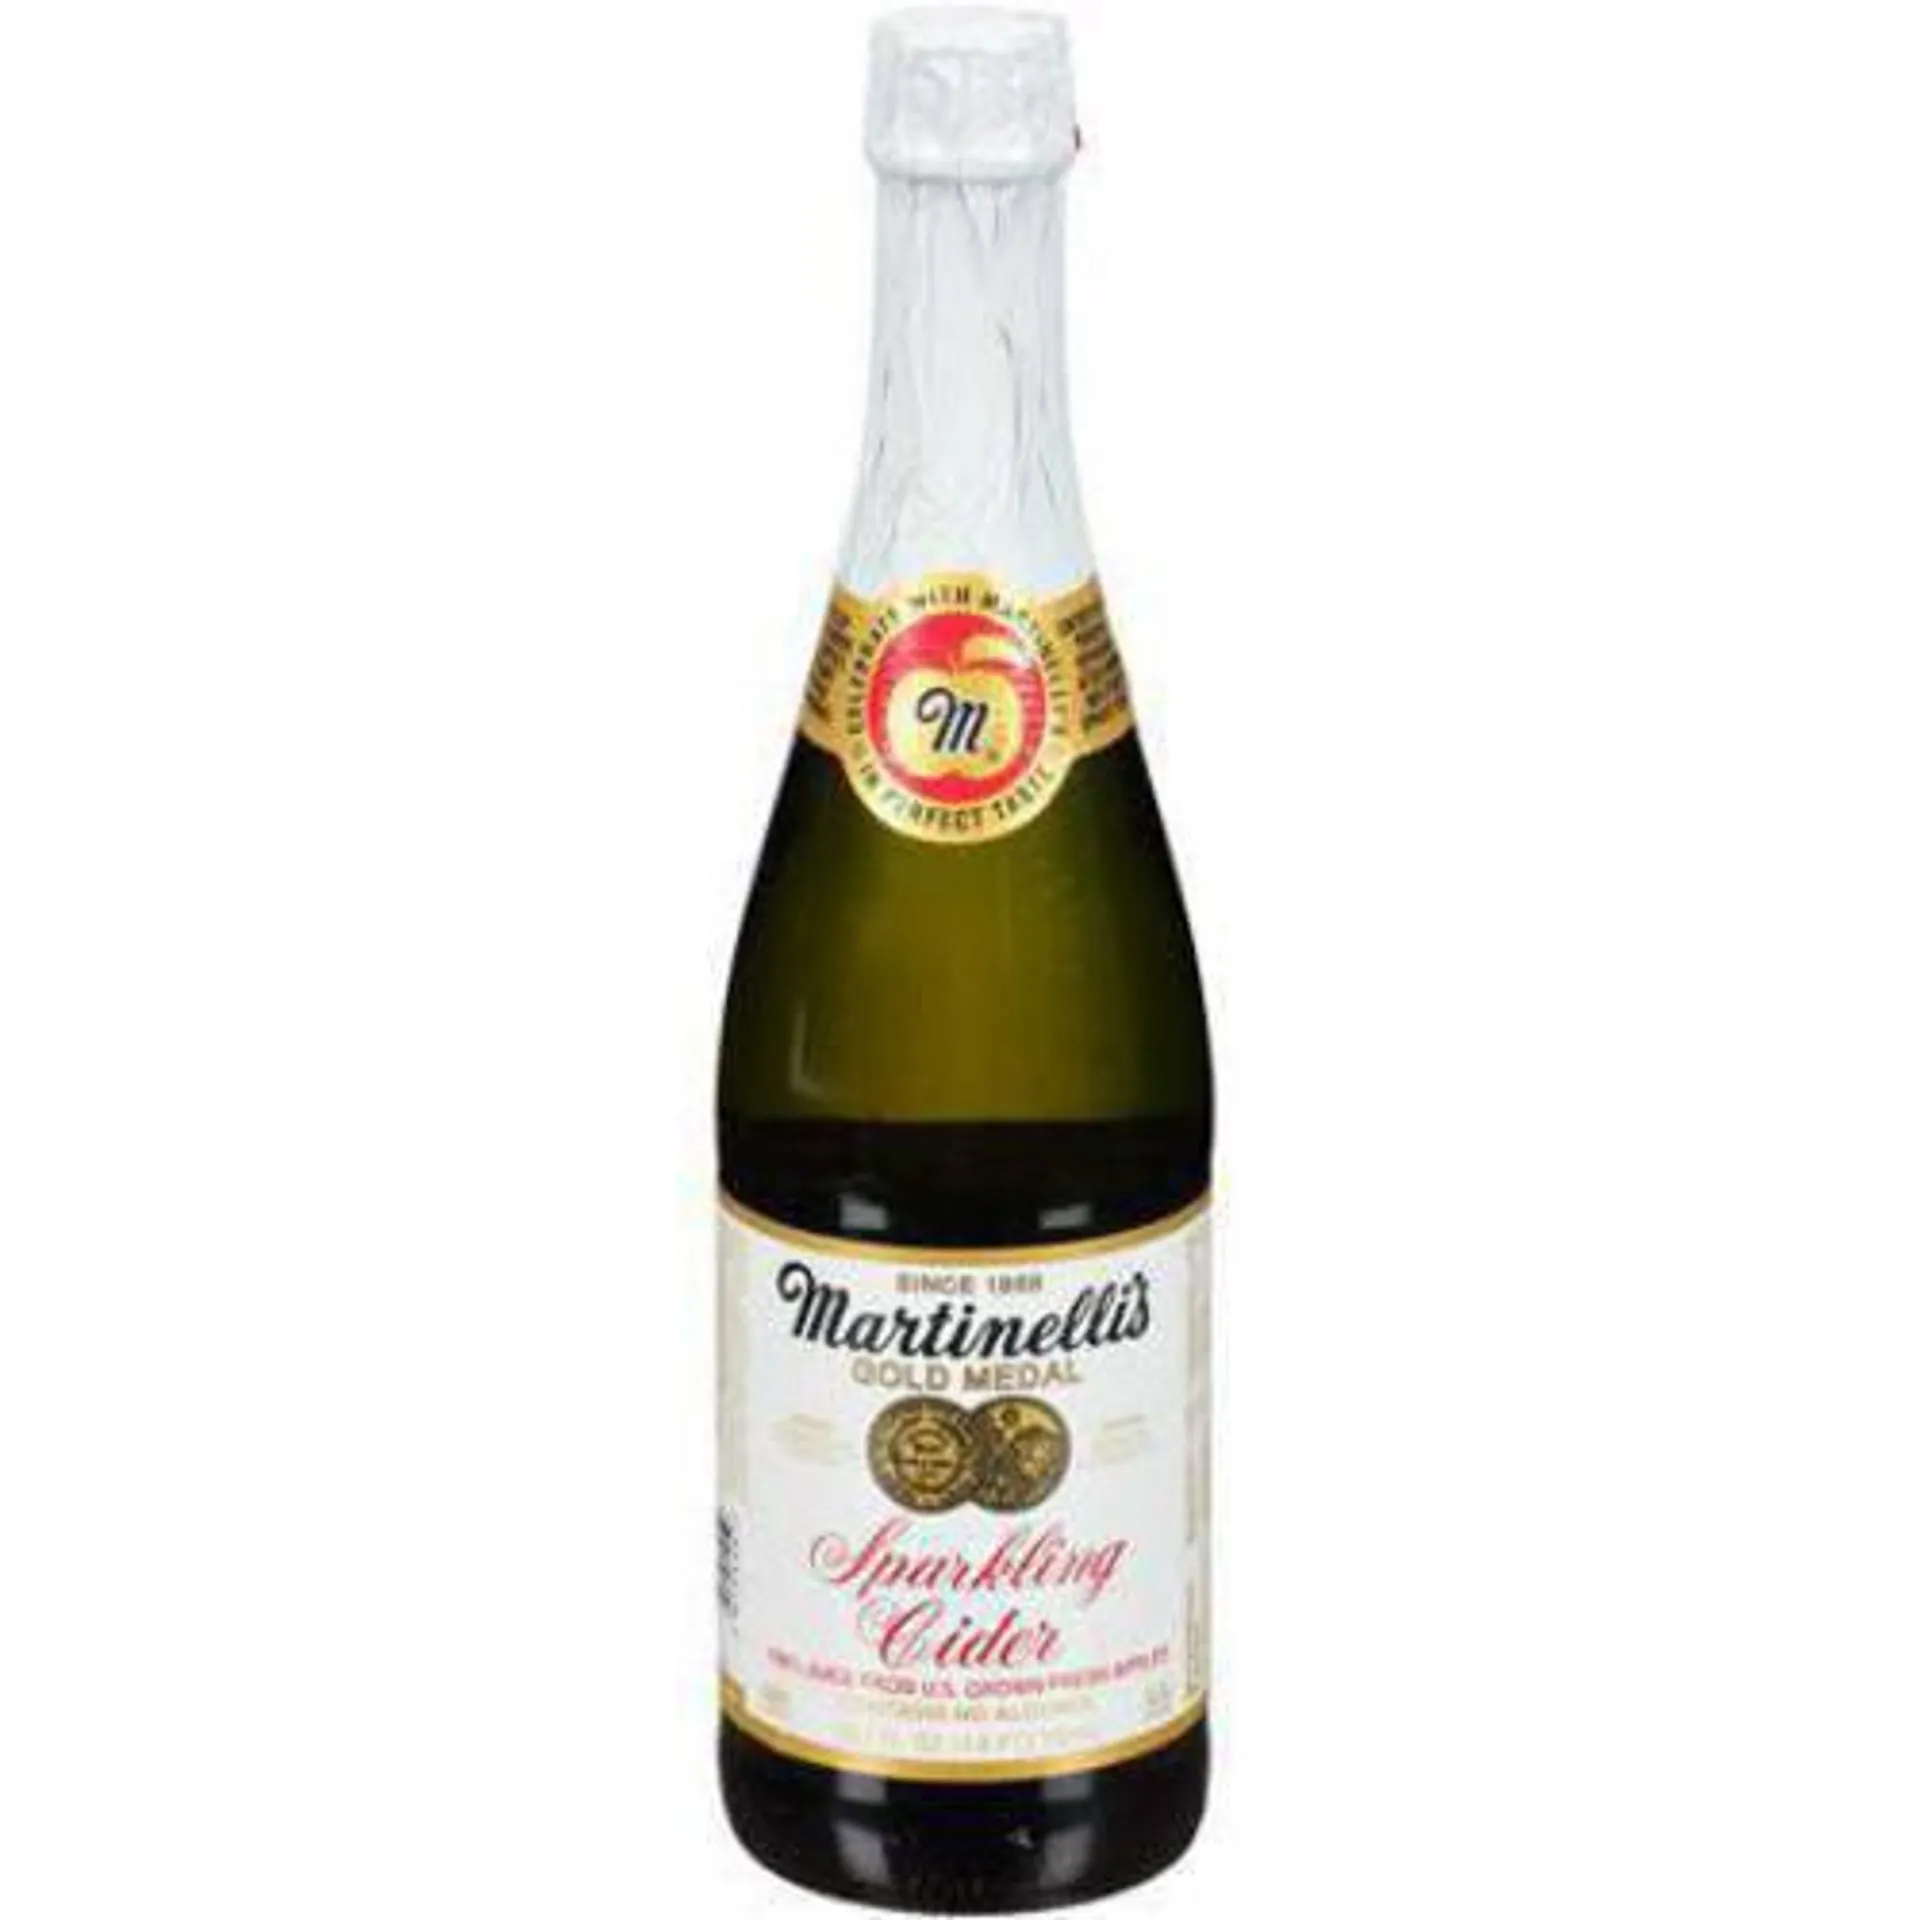 Martinelli's Gold Medal Sparkling Cider, 25.4 fl oz